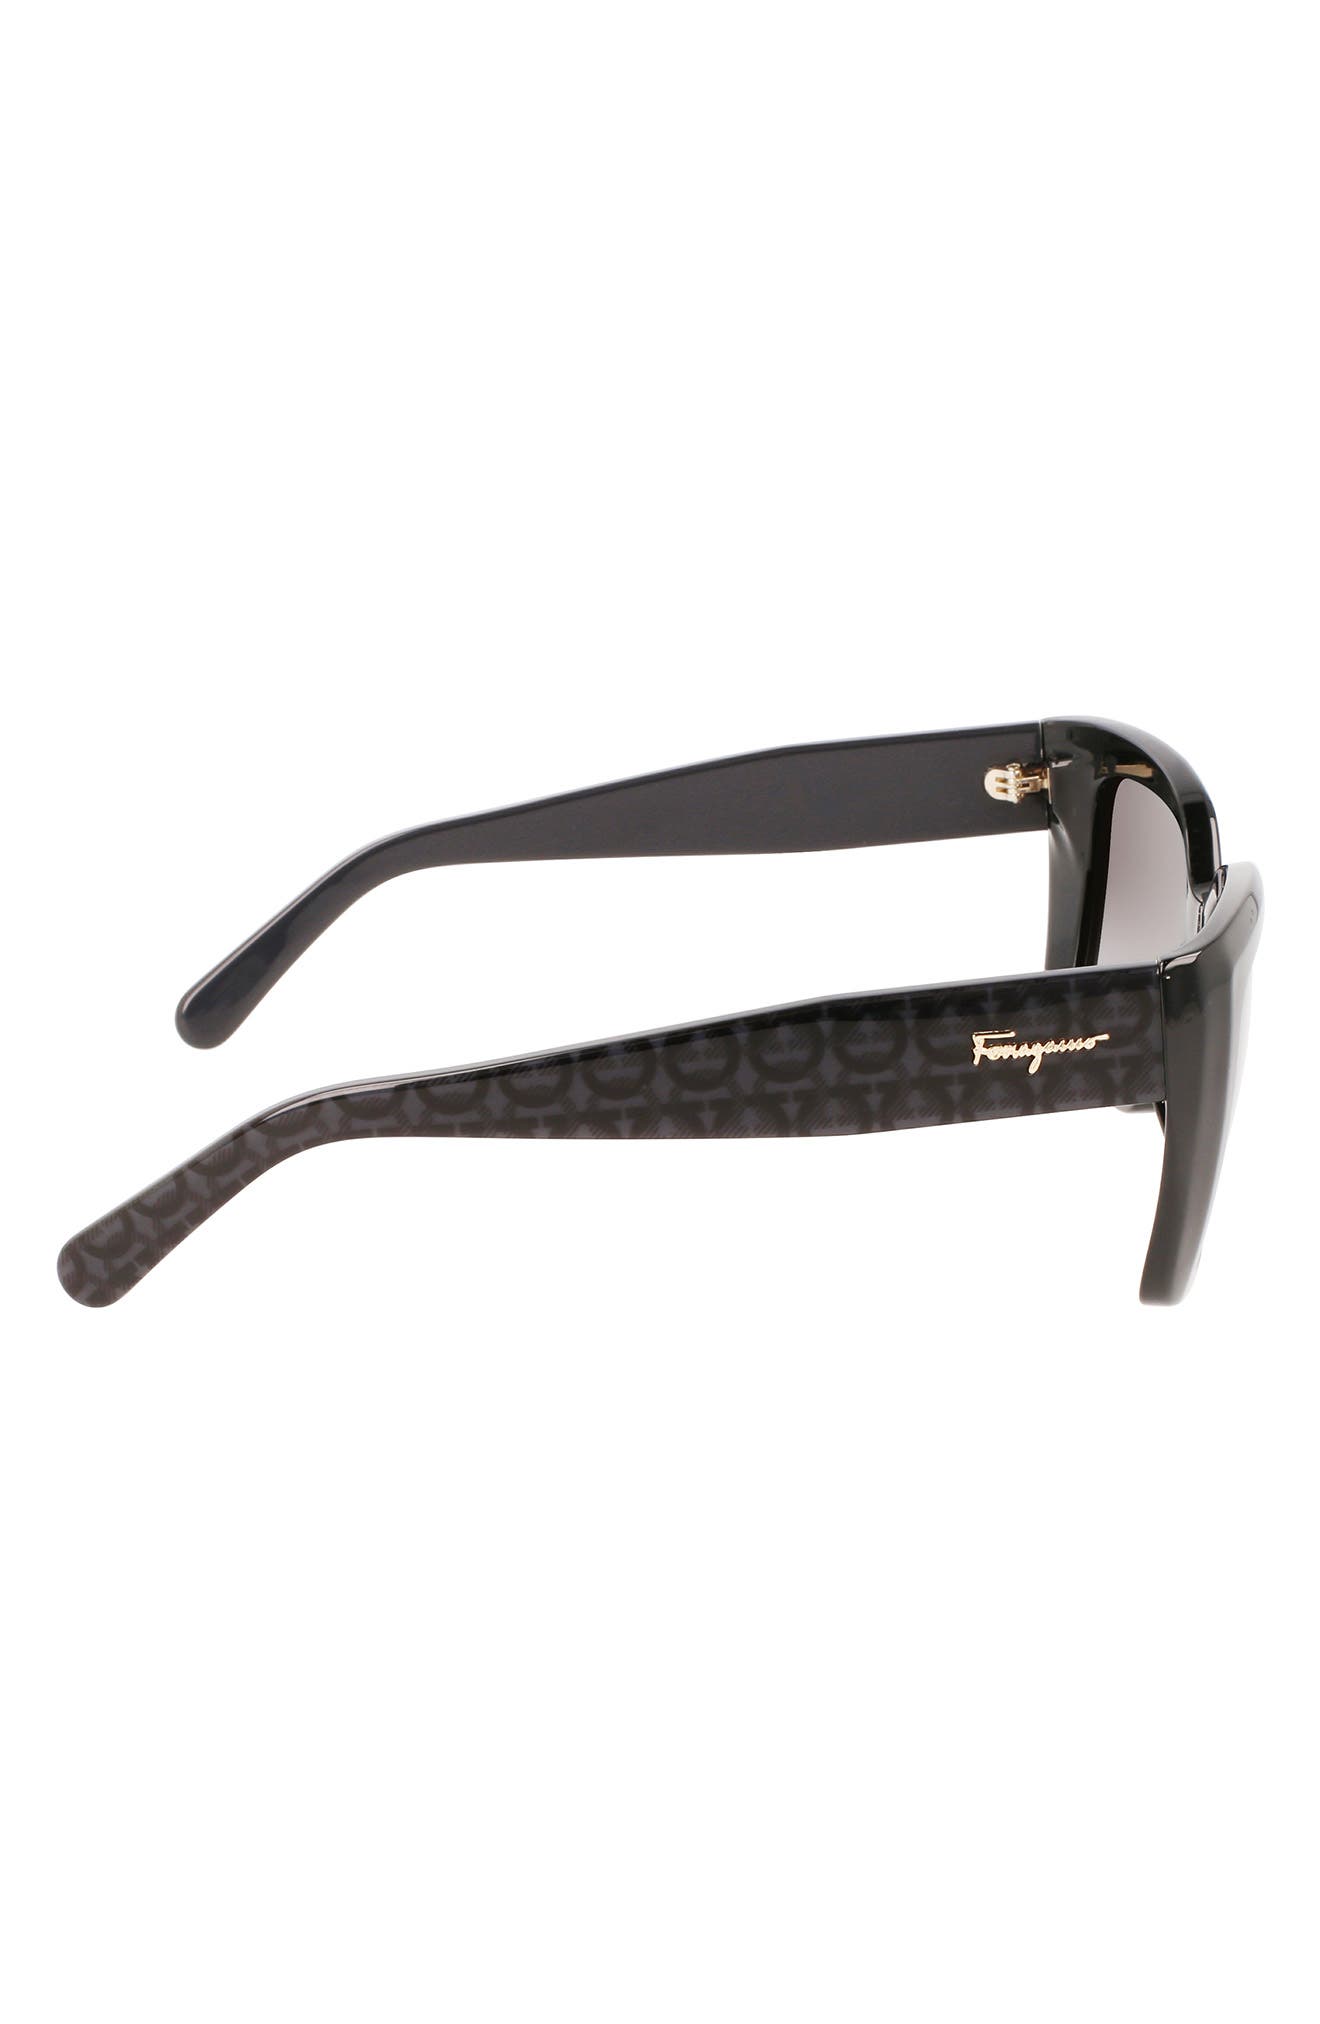 Ferragamo Monochrome Rectangle Plastic Sunglasses - Bergdorf Goodman